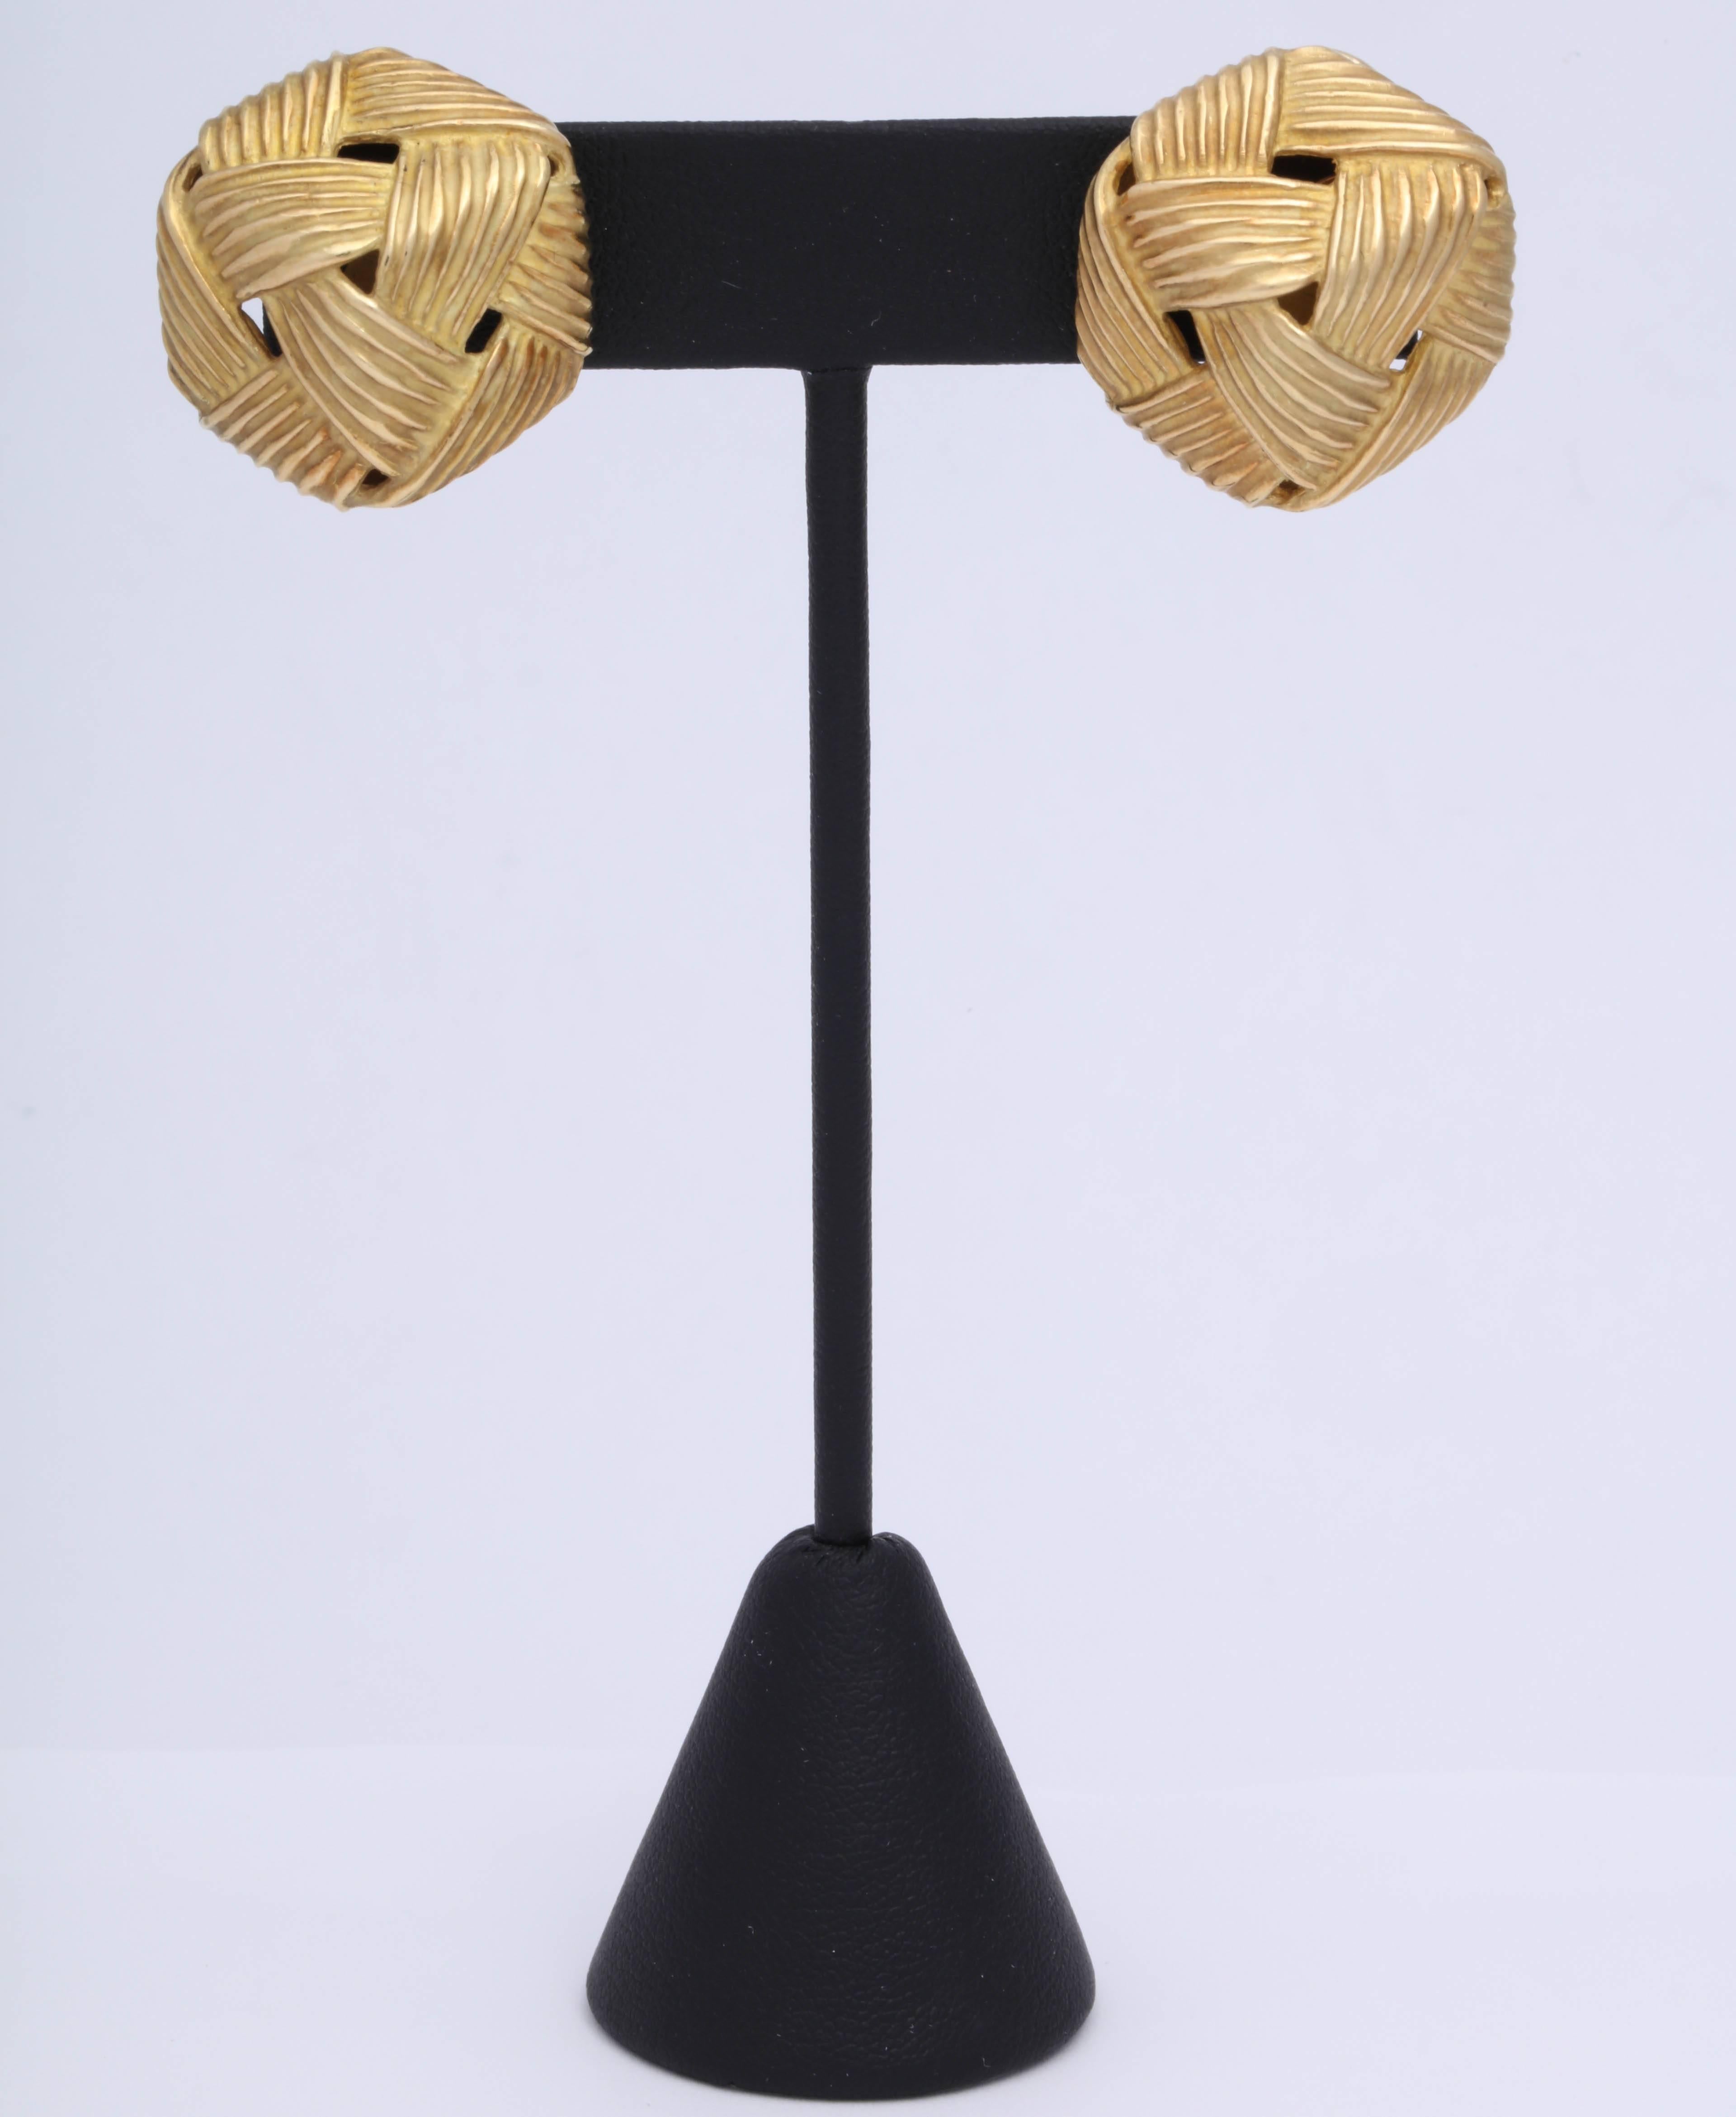 18kt Gelbgold - dreidimensionales Korbgeflecht Ohrringe mit Post  (abnehmbar) und Omega Backs.  Signiert Cummings und datiert 1987 & markiert 18kt.  Perfekt für das Büro oder das Theater.  Sehr stark und beeinflussbar. Perfekt, um einen guten